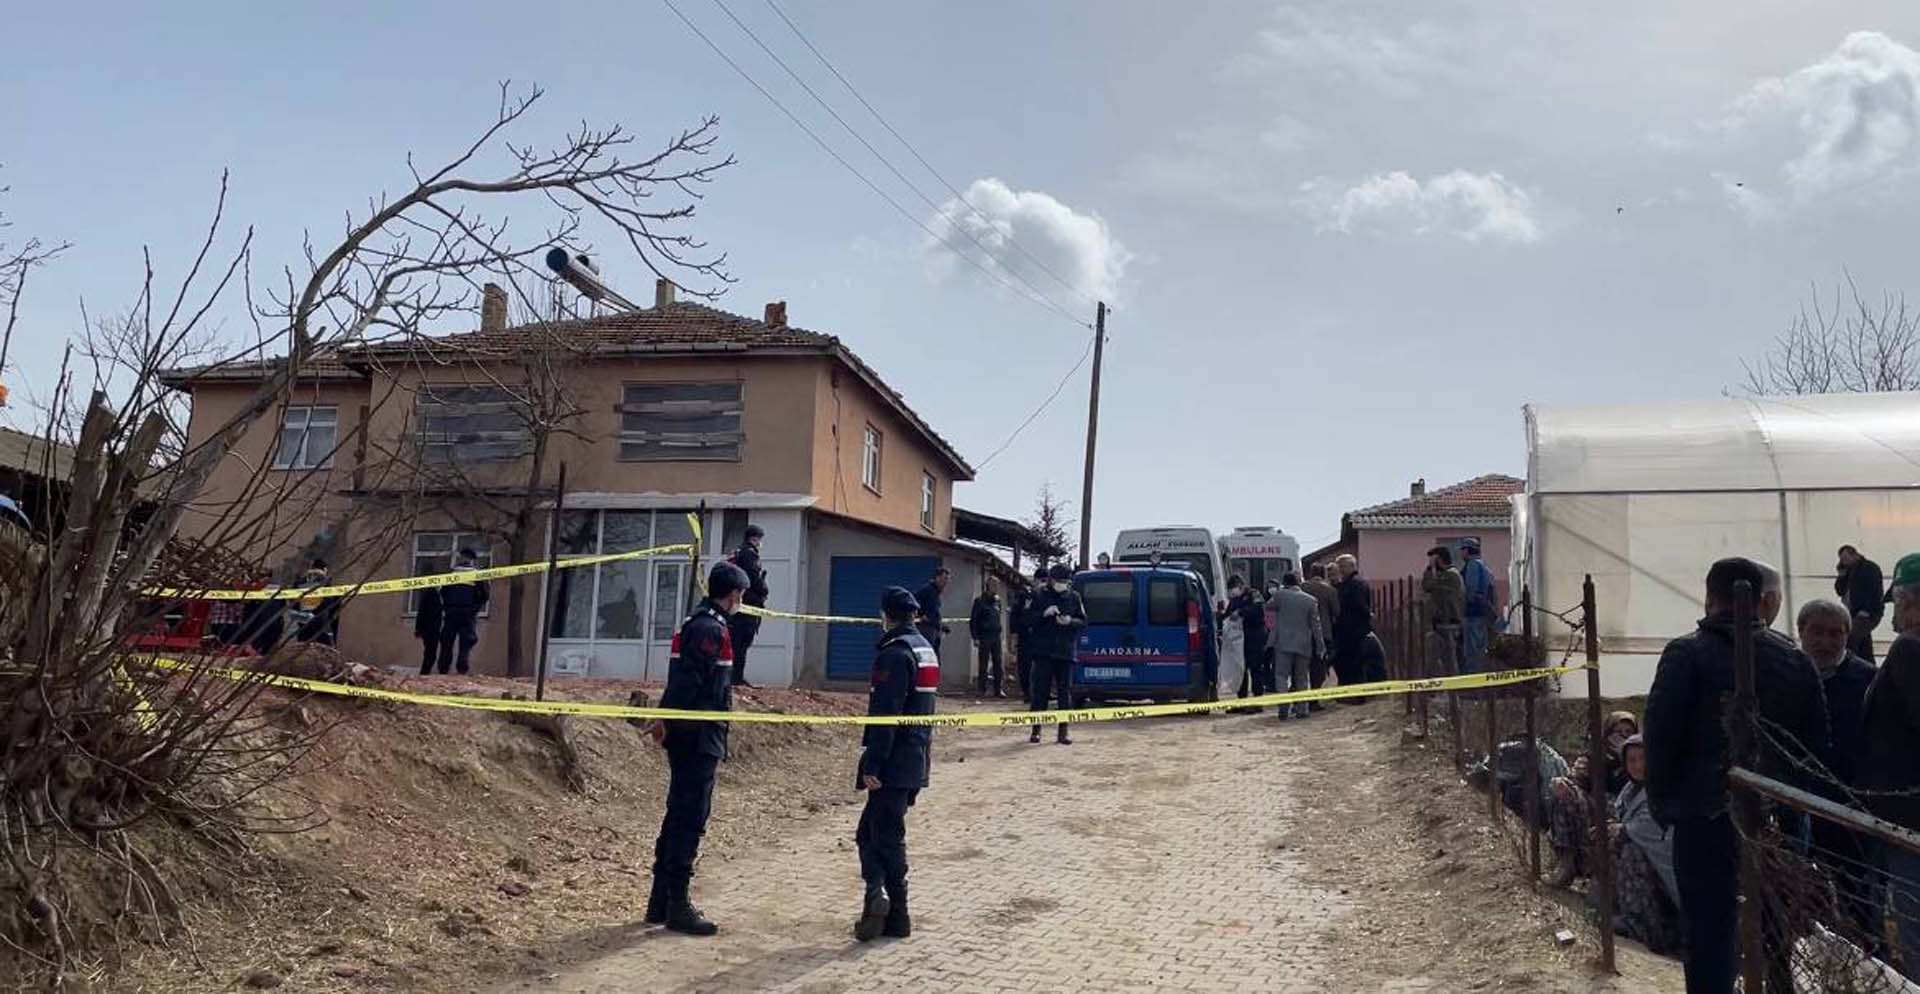 Son dakika | Edirne'de korkunç olay: Aynı aileden 4 kişi evinde ölü bulundu